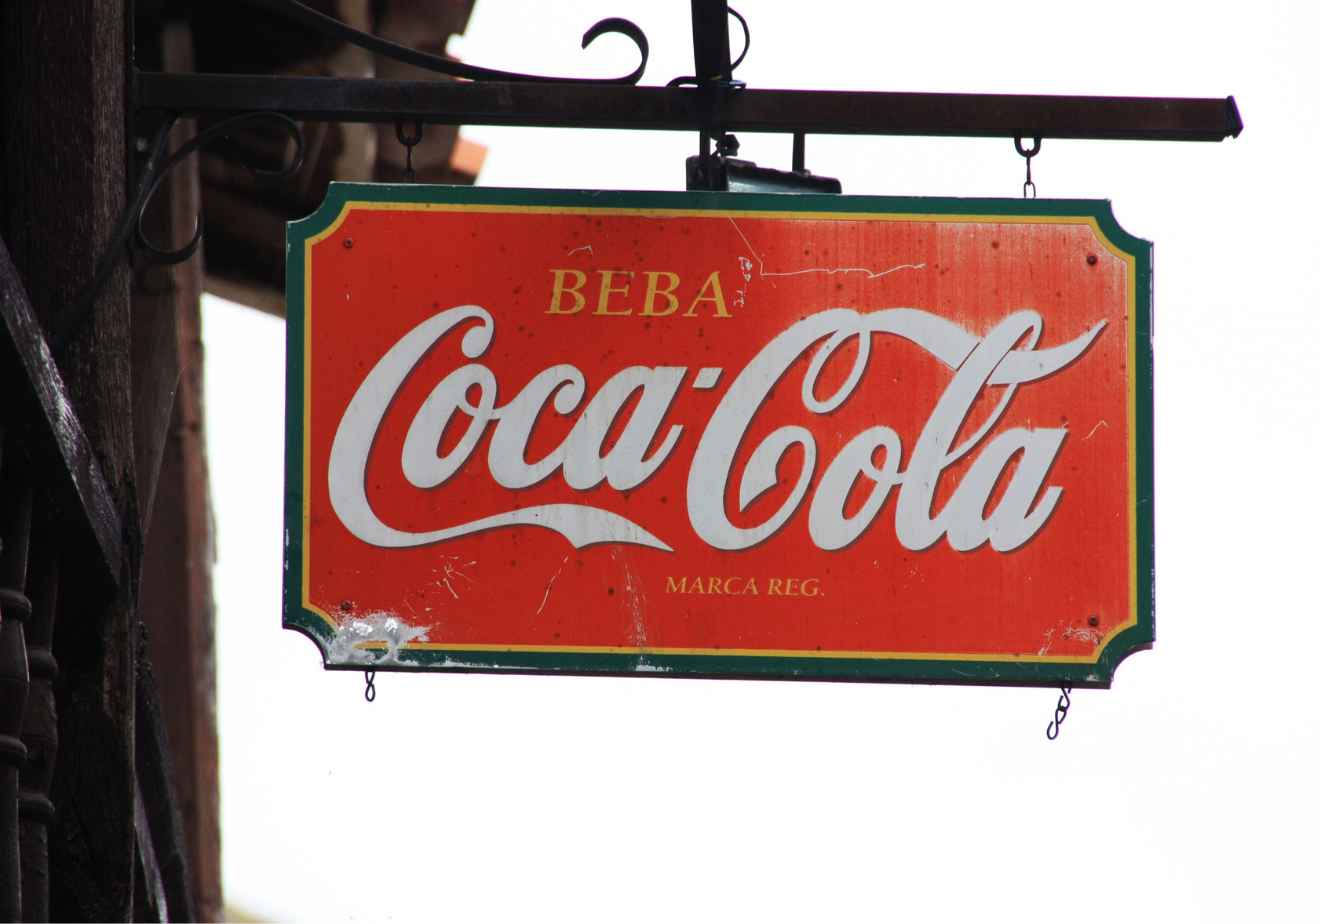 Imagen de un antigua publicidad  colgado de Coca Cola con el slogan "beba Coca Cola"